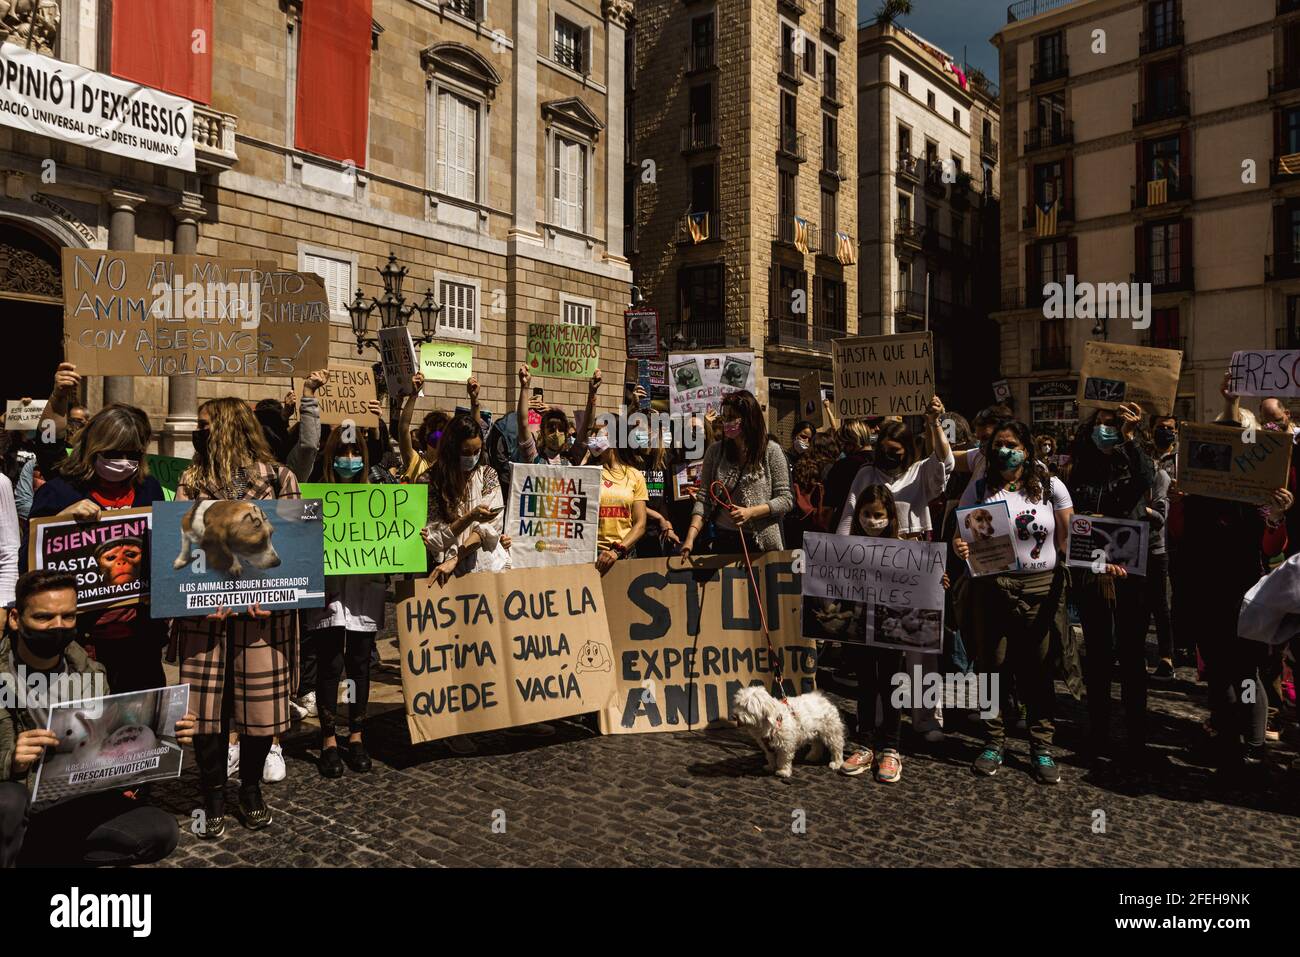 Barcellona, Spagna. 24 Apr 2021. Gli attivisti hanno dei cartelli che chiedono la chiusura del laboratorio di sperimentazione animale 'vivotecnia' durante una protesta per i diritti degli animali in scena a Barcellona Credit: Matthias Oesterle/Alamy Live News Foto Stock